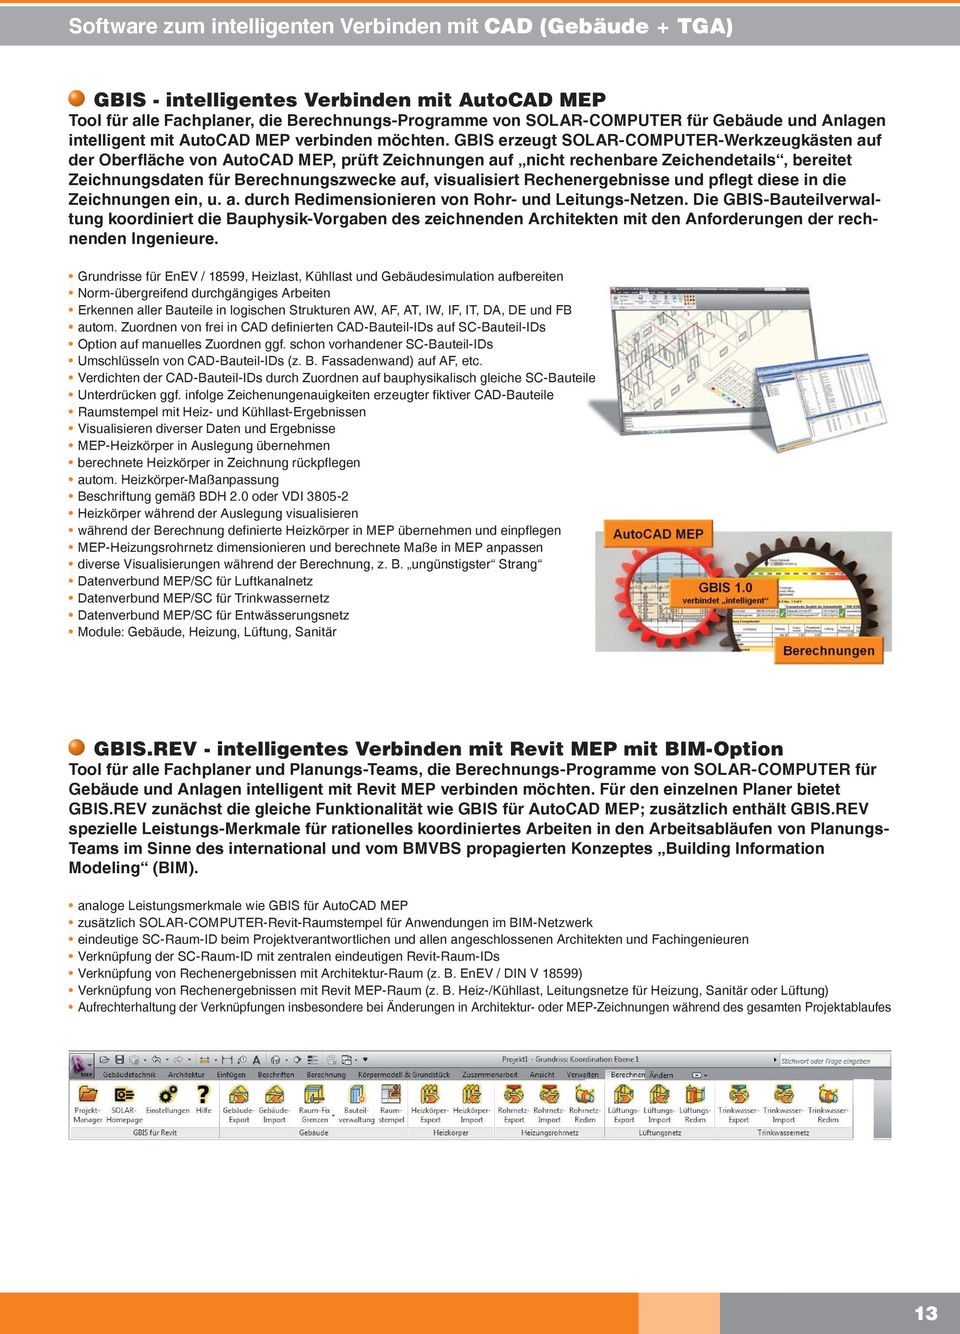 GBIS erzeugt SOLAR-COMPUTER-Werkzeugkästen auf der Oberfläche von AutoCAD MEP, prüft Zeichnungen auf nicht rechenbare Zeichendetails, bereitet Zeichnungsdaten für Berechnungszwecke auf, visualisiert